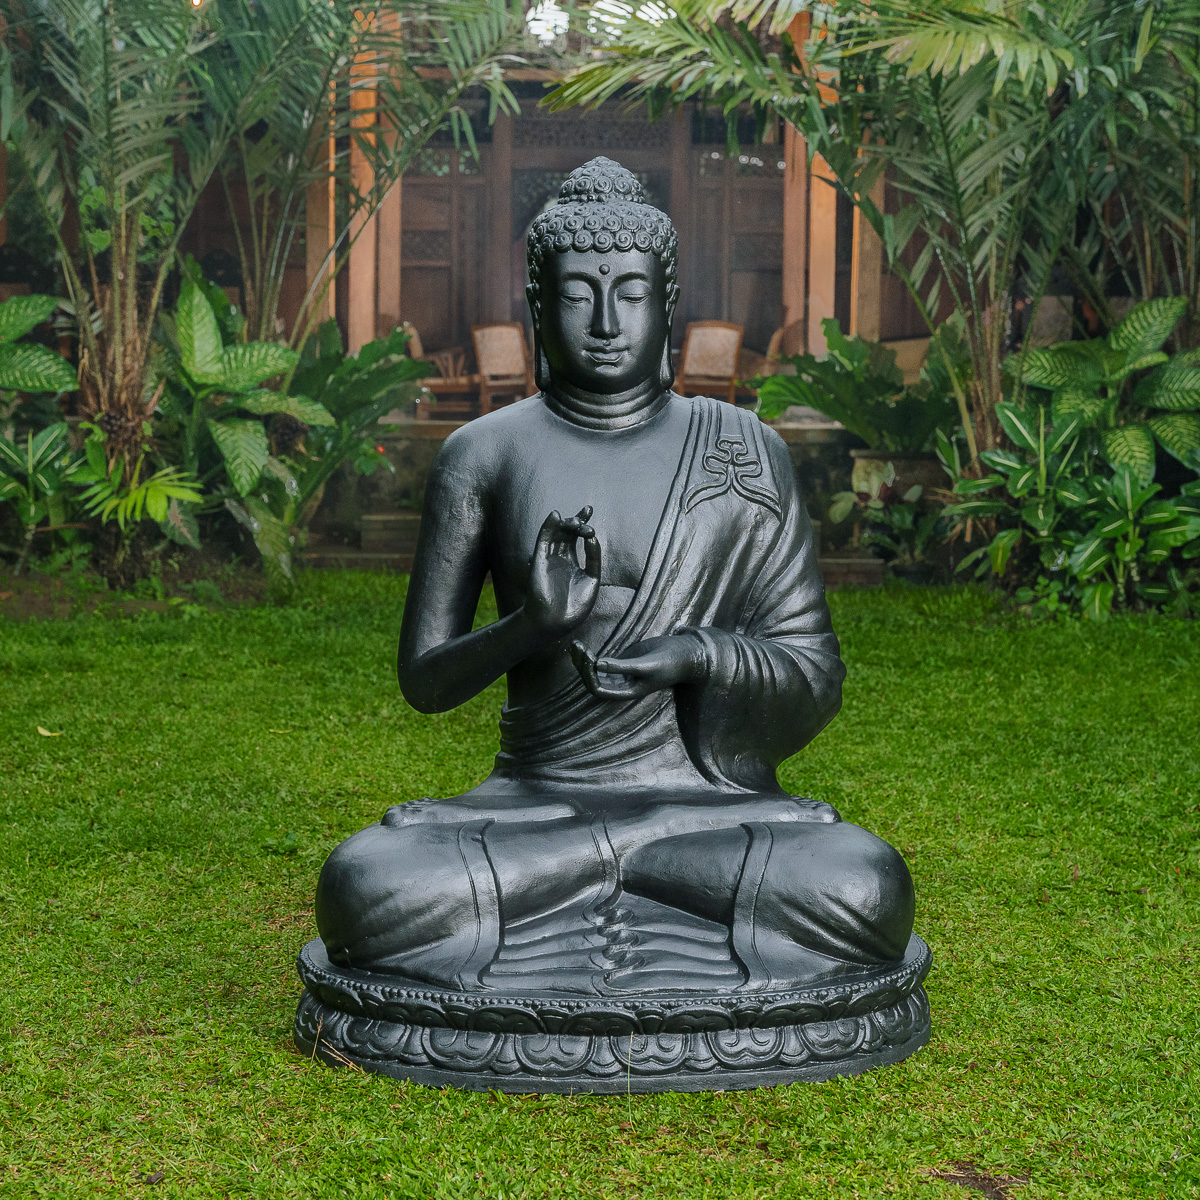 Statue bouddha assis position offrande 42cm Couleur doré Wanda